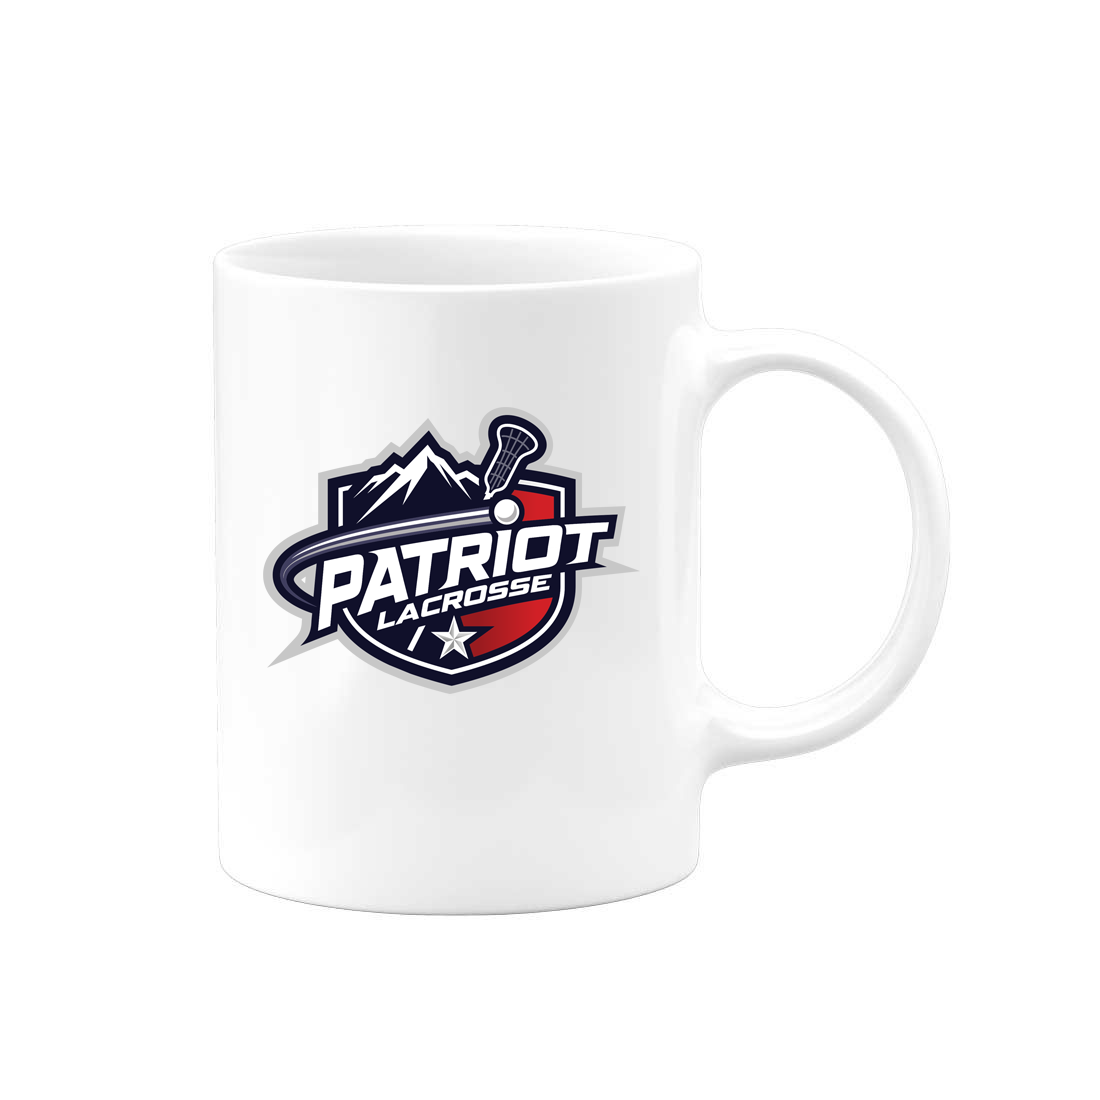 Patriot Lacrosse Team Mug